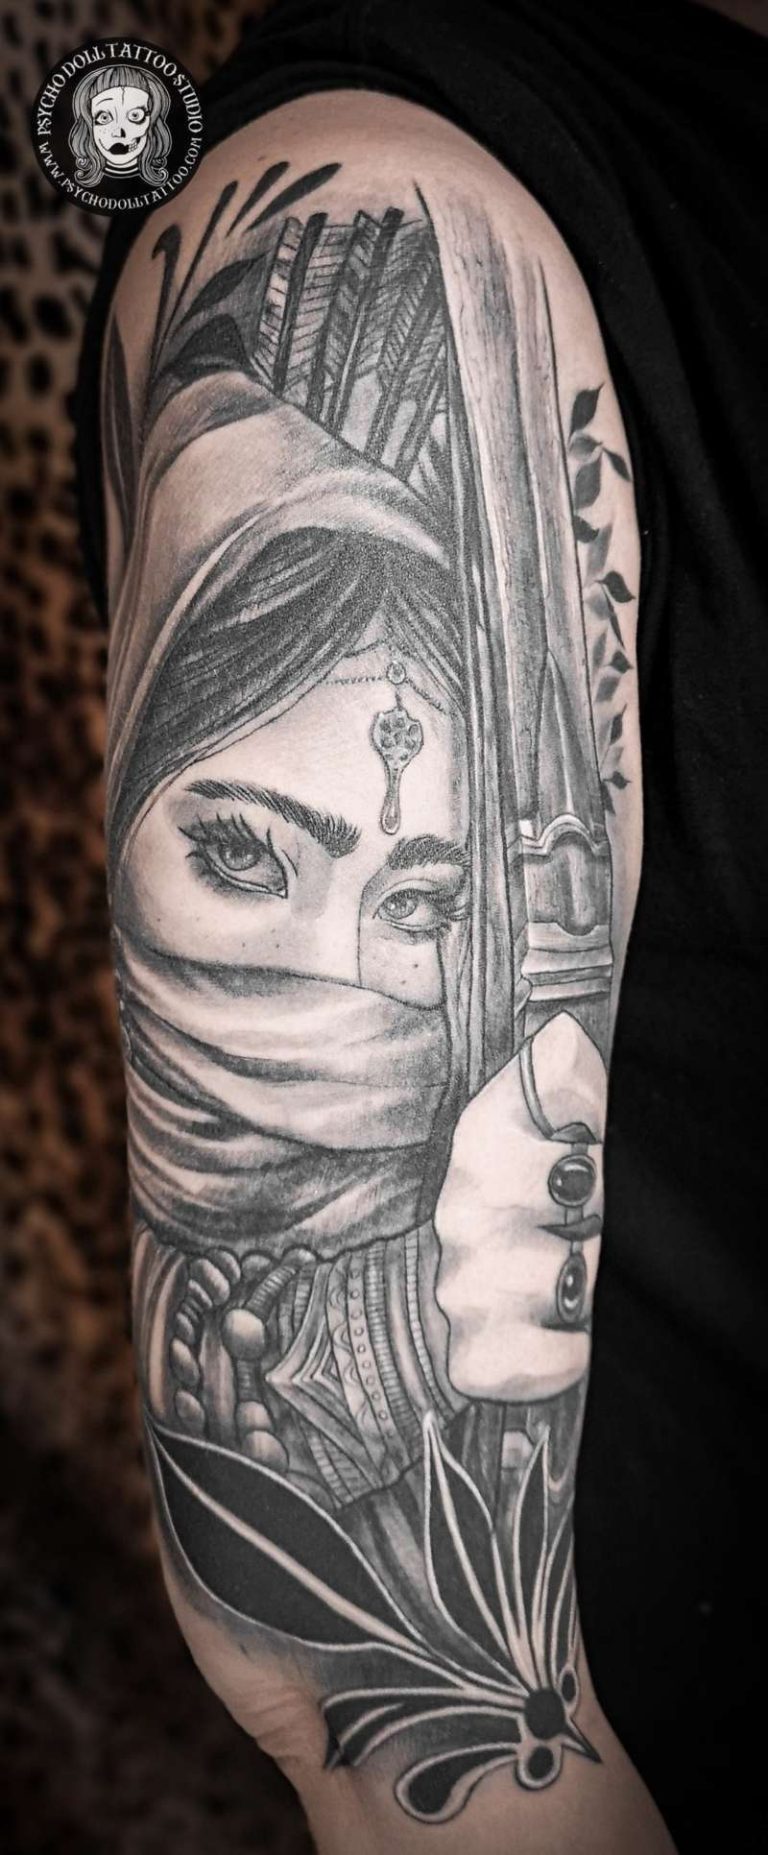 Tatuaggio di donna guerriera con fiocco